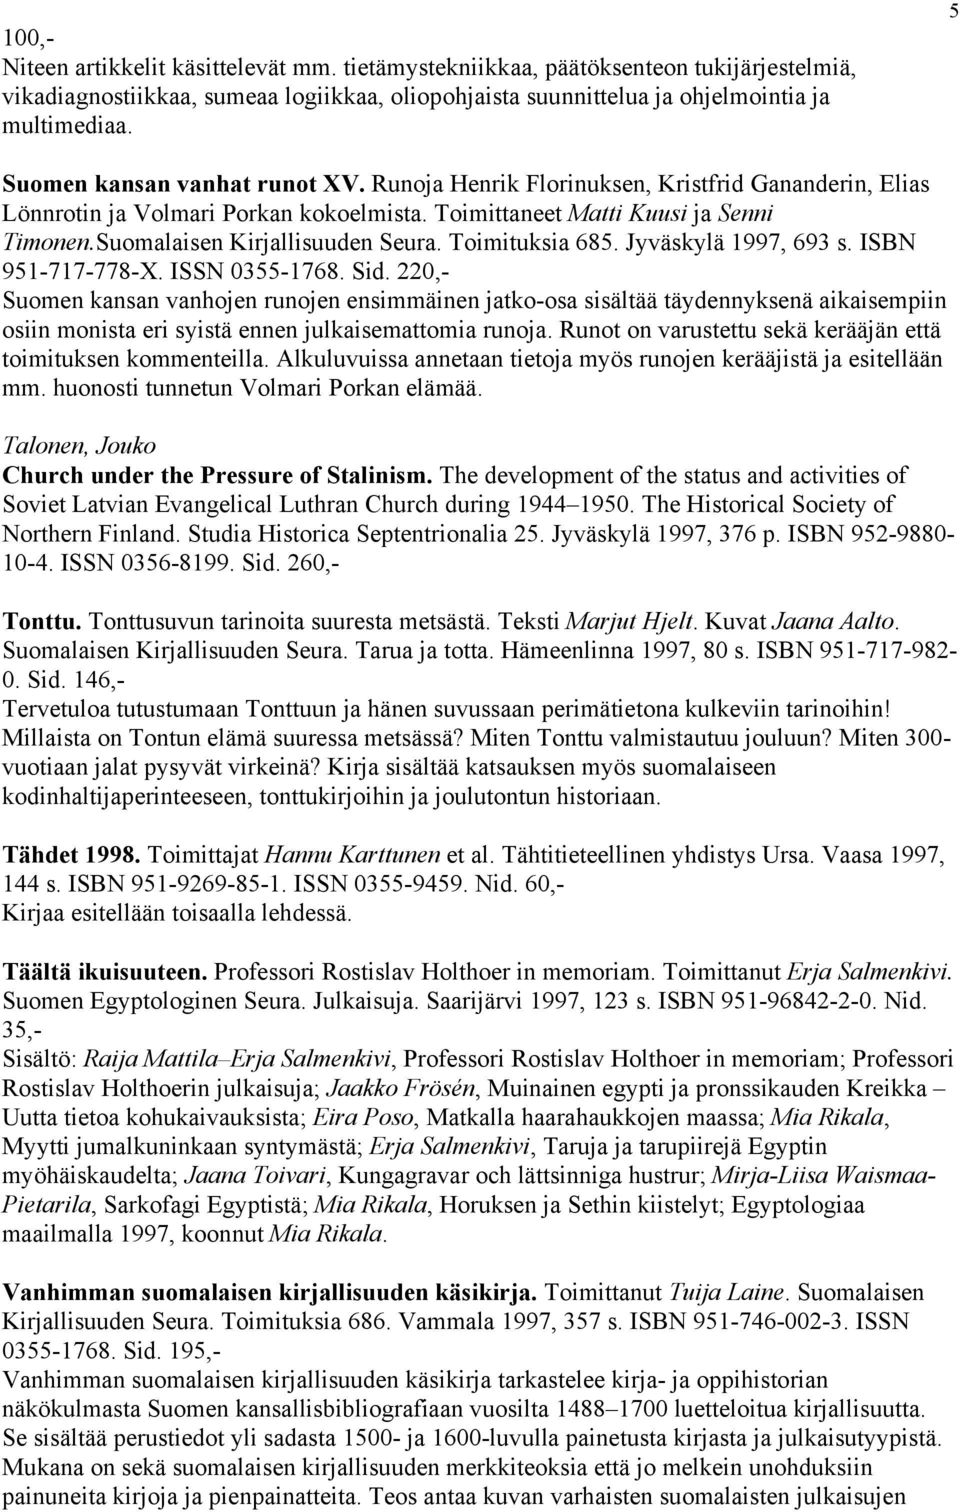 Suomalaisen Kirjallisuuden Seura. Toimituksia 685. Jyväskylä 1997, 693 s. ISBN 951-717-778-X. ISSN 0355-1768. Sid.